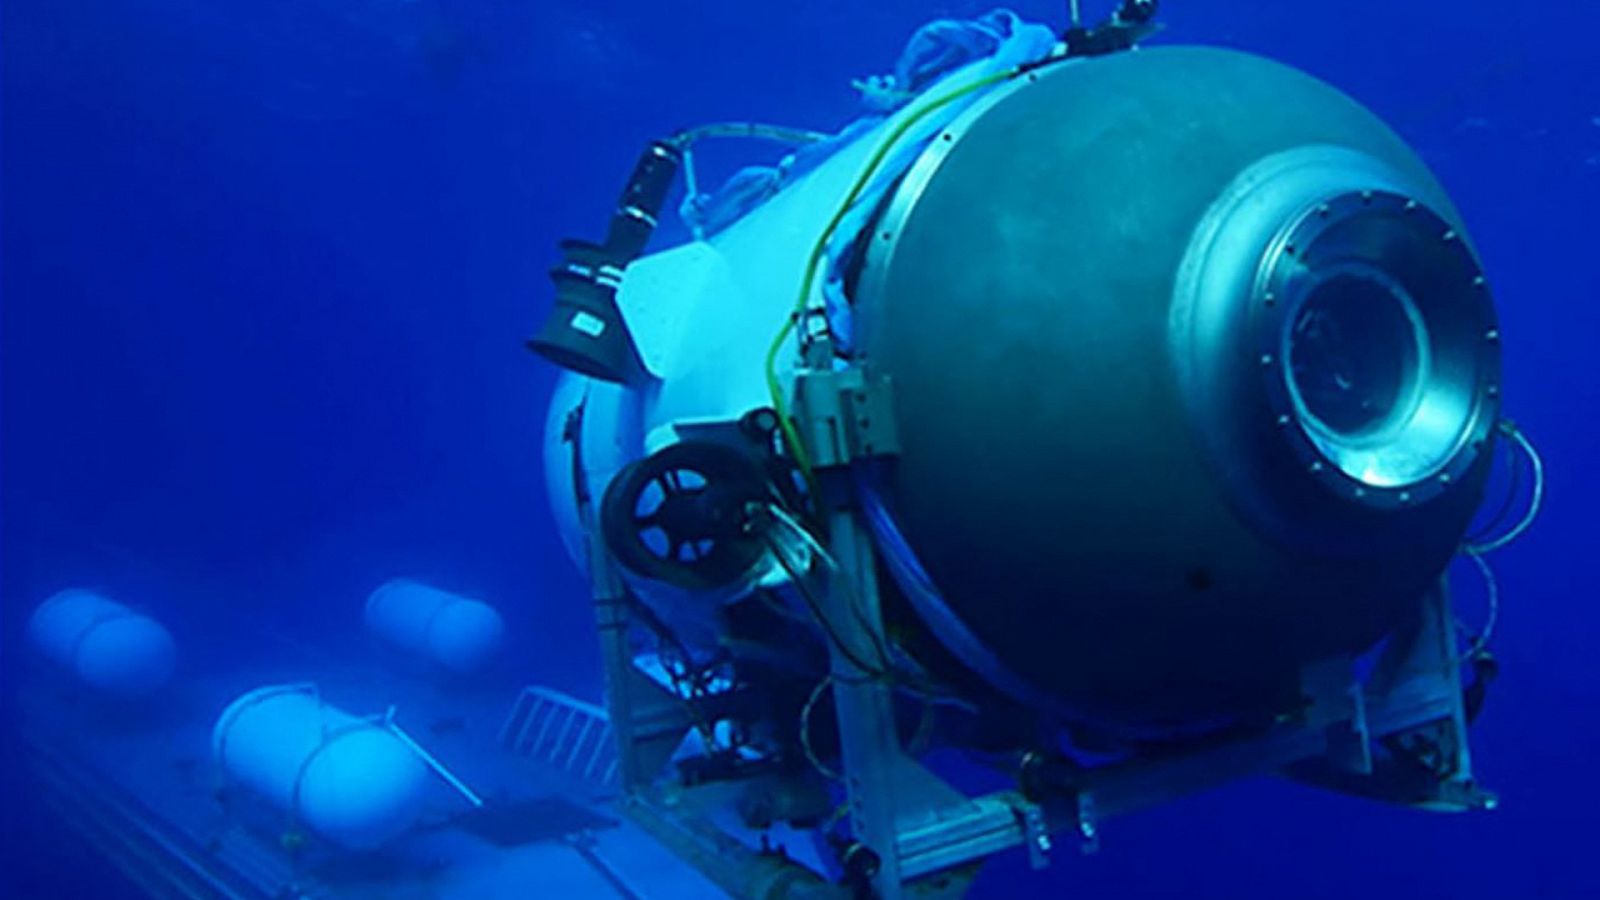 El sumergible Titan, desarrollado por la empresa OceanGate, era una embarcación experimental.